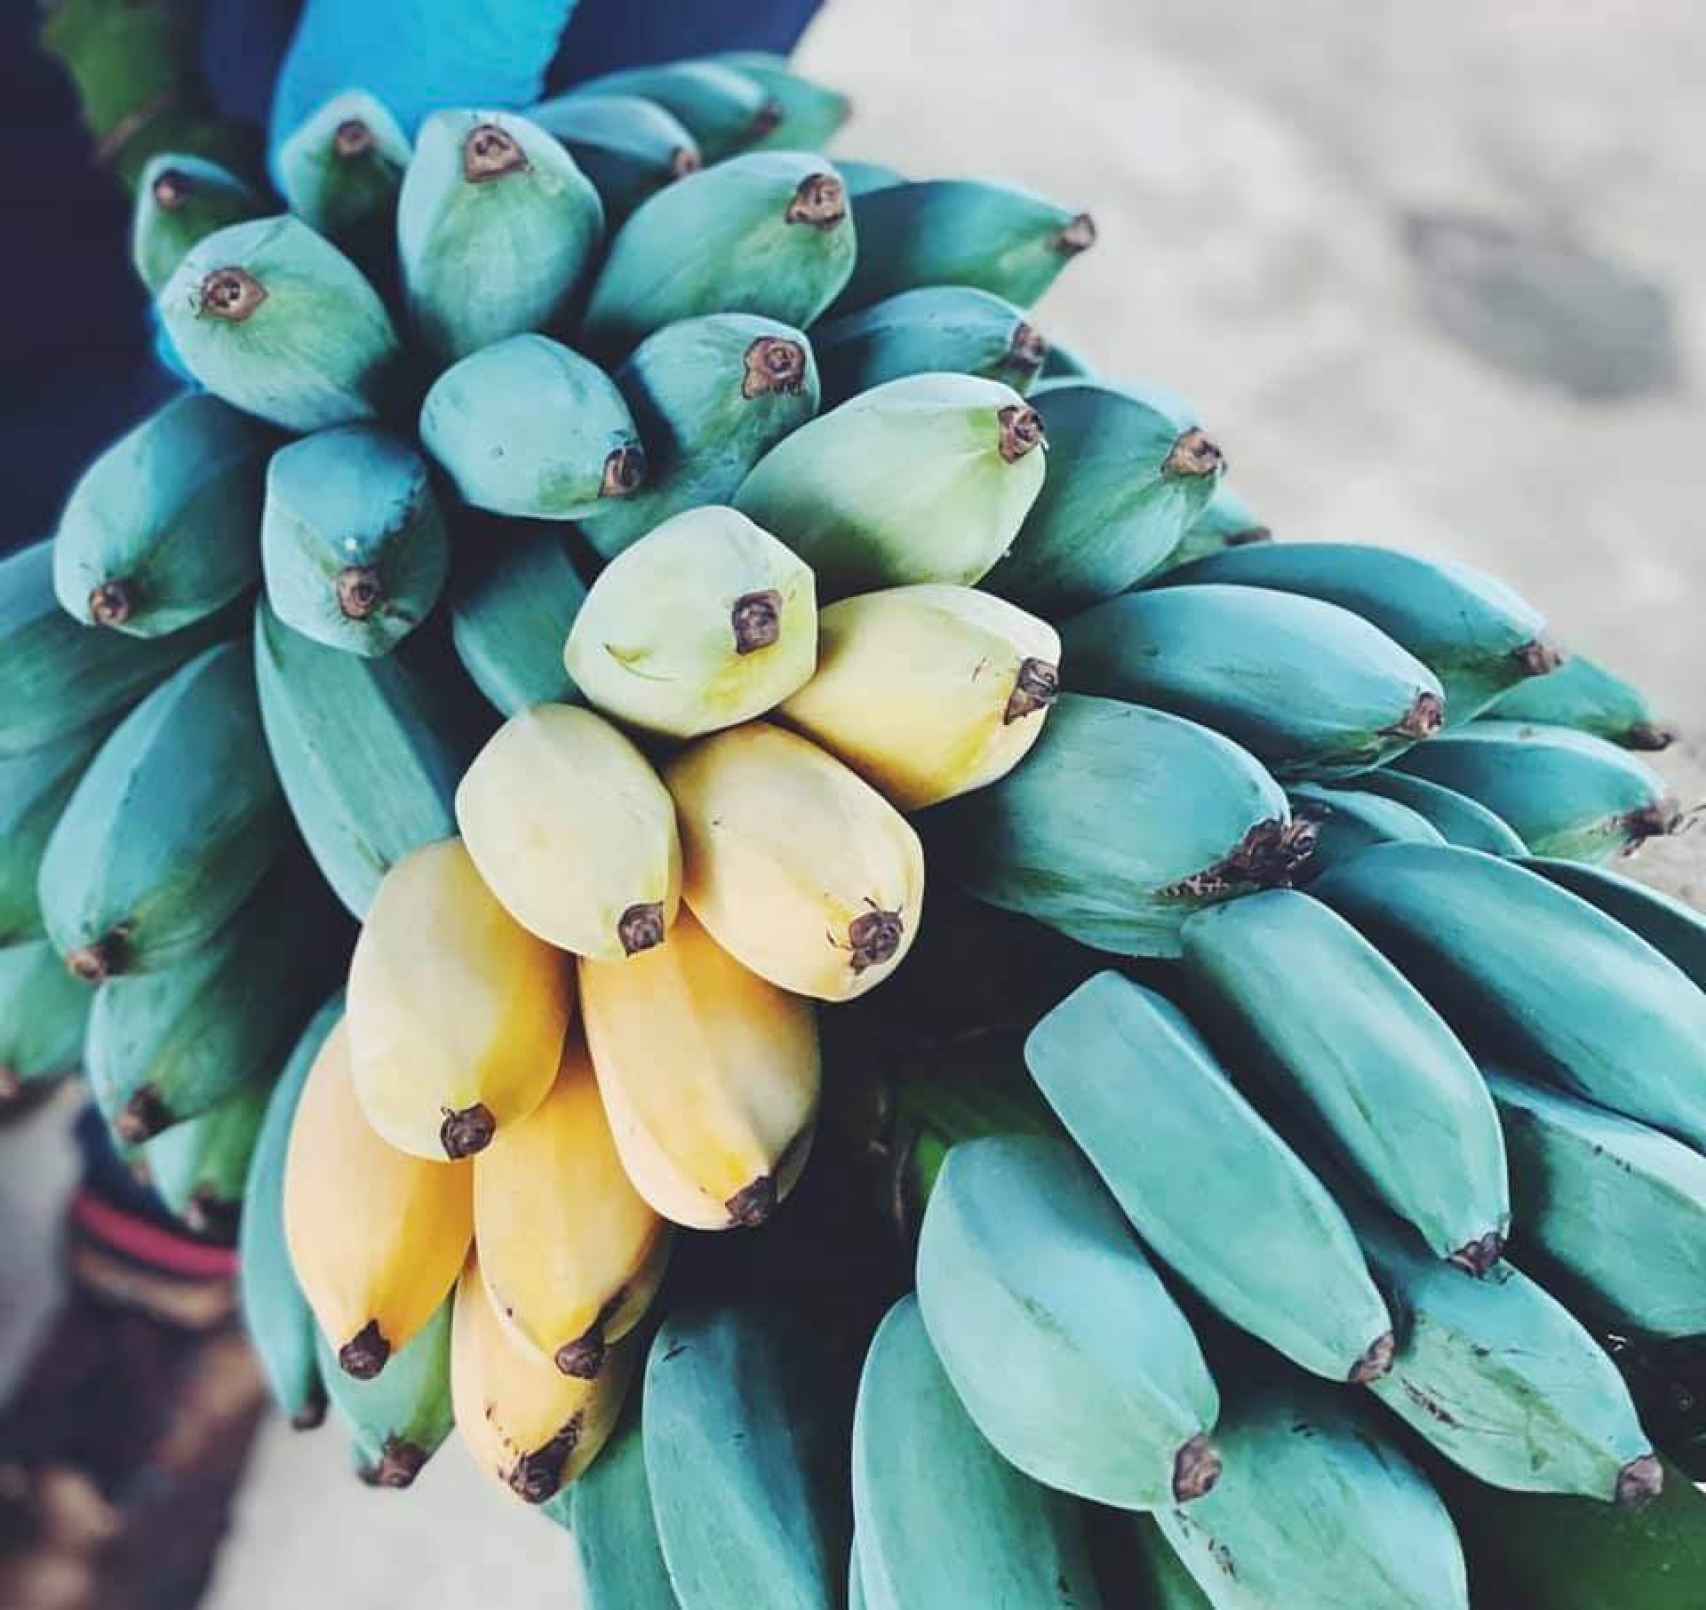 La piña de plátano azul, a medida que avanza la maduración, va perdiendo su color pasando a ser amarillo.